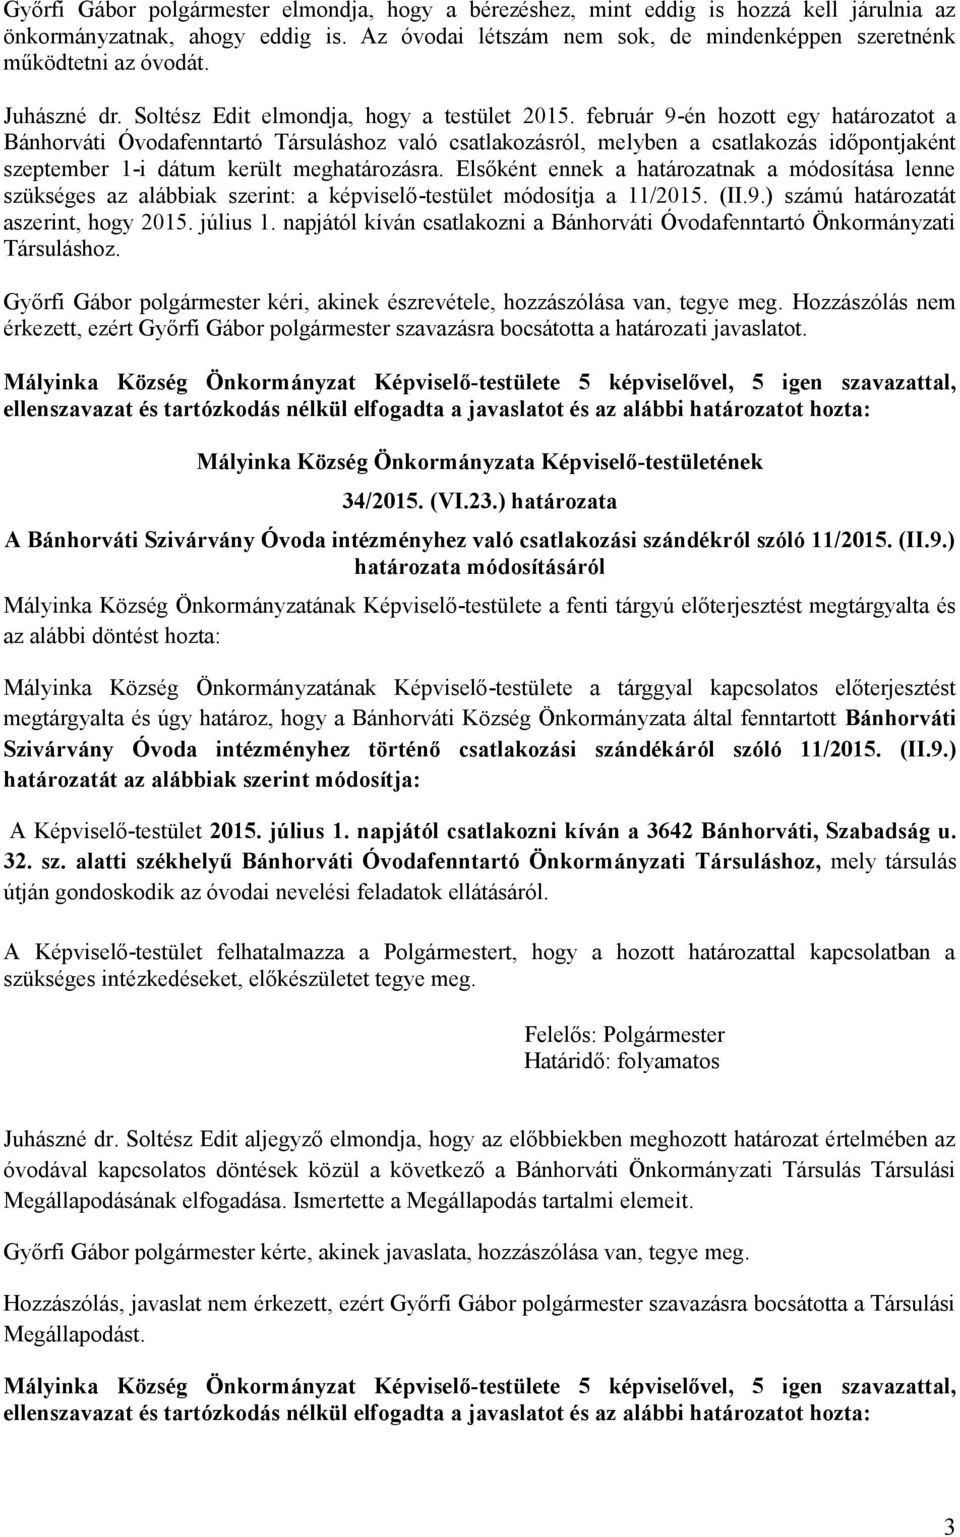 február 9-én hozott egy határozatot a Bánhorváti Óvodafenntartó Társuláshoz való csatlakozásról, melyben a csatlakozás időpontjaként szeptember 1-i dátum került meghatározásra.